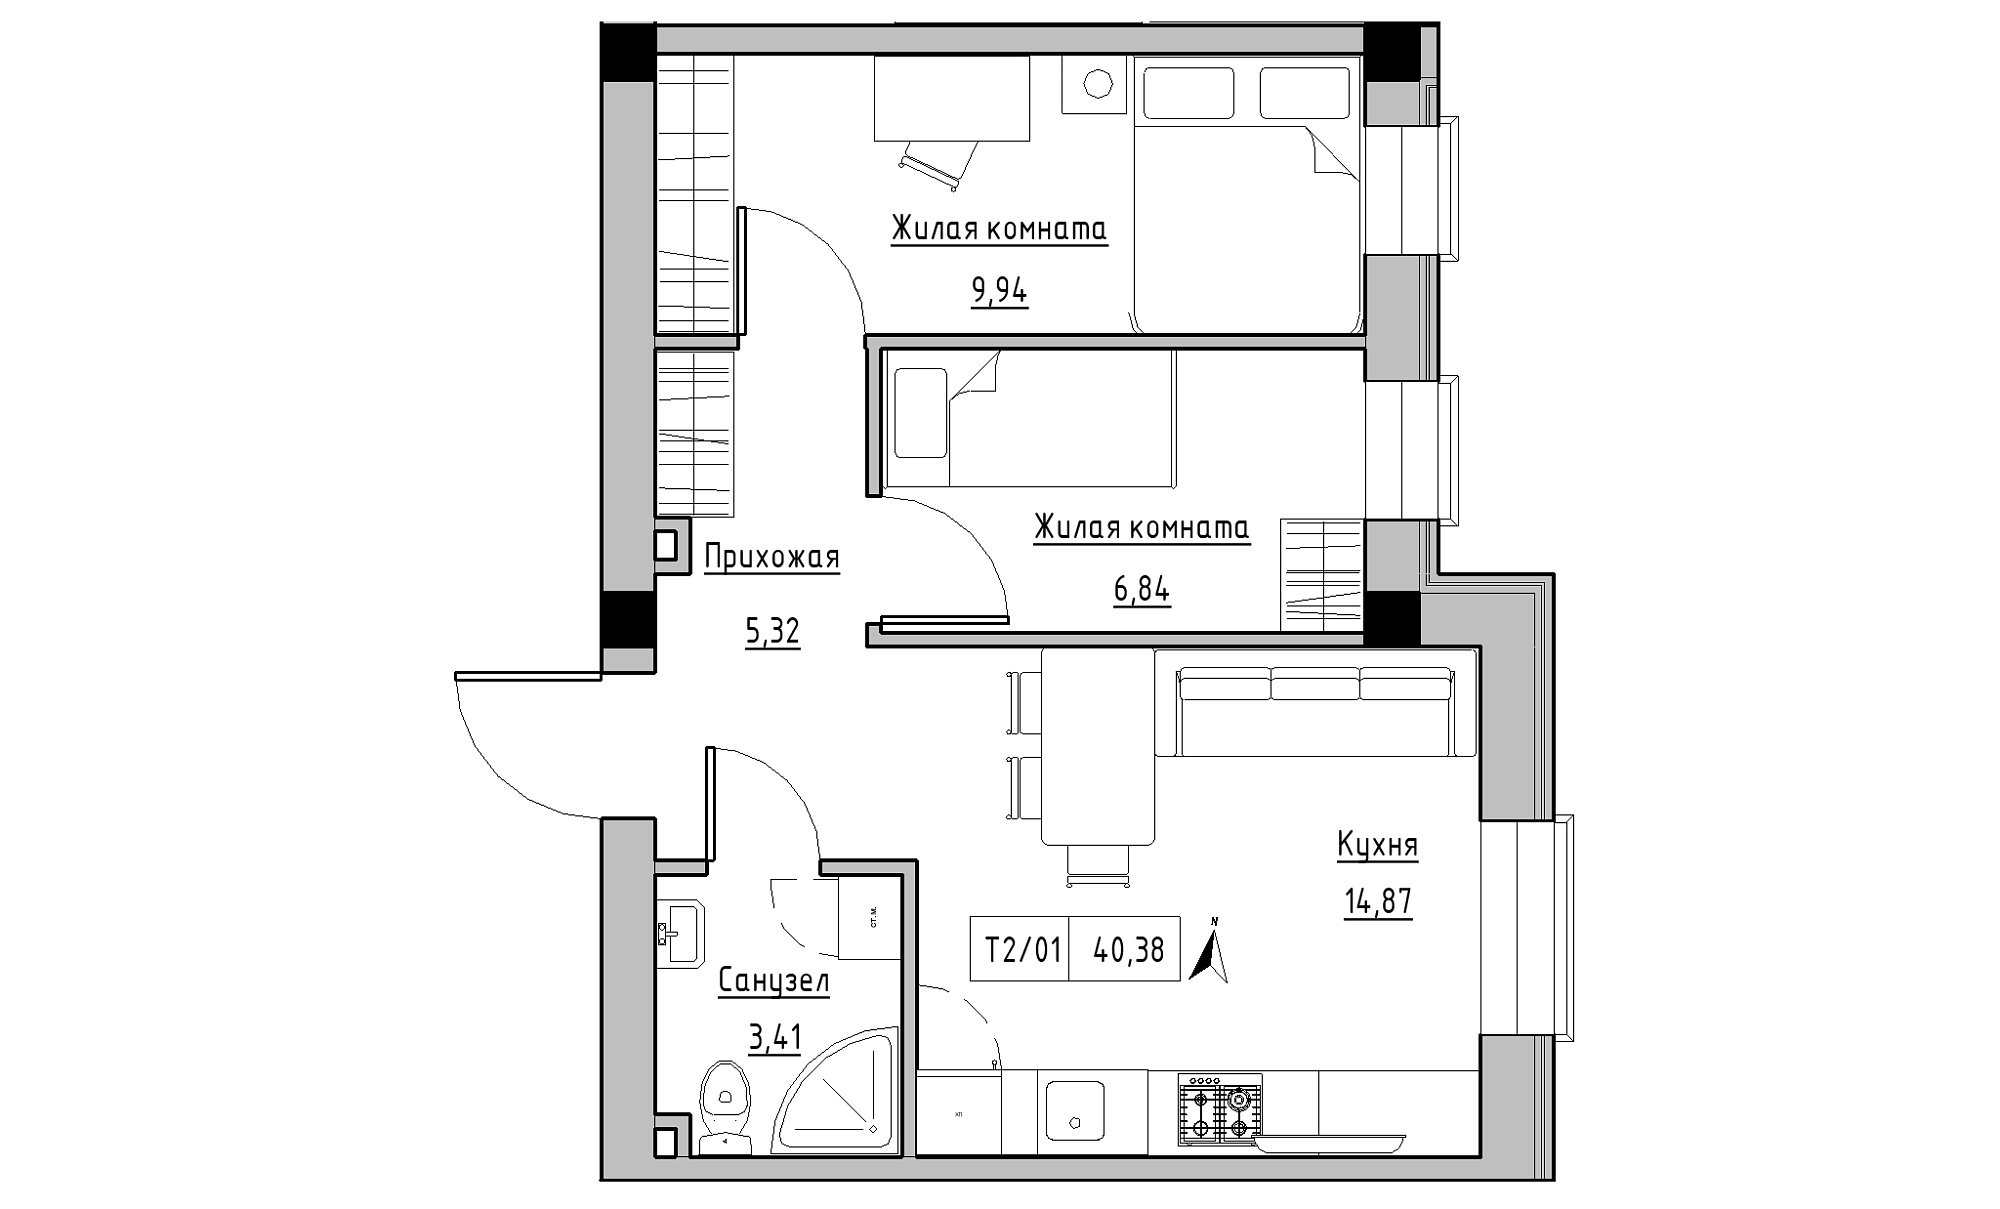 Планировка 2-к квартира площей 40.38м2, KS-015-01/0006.